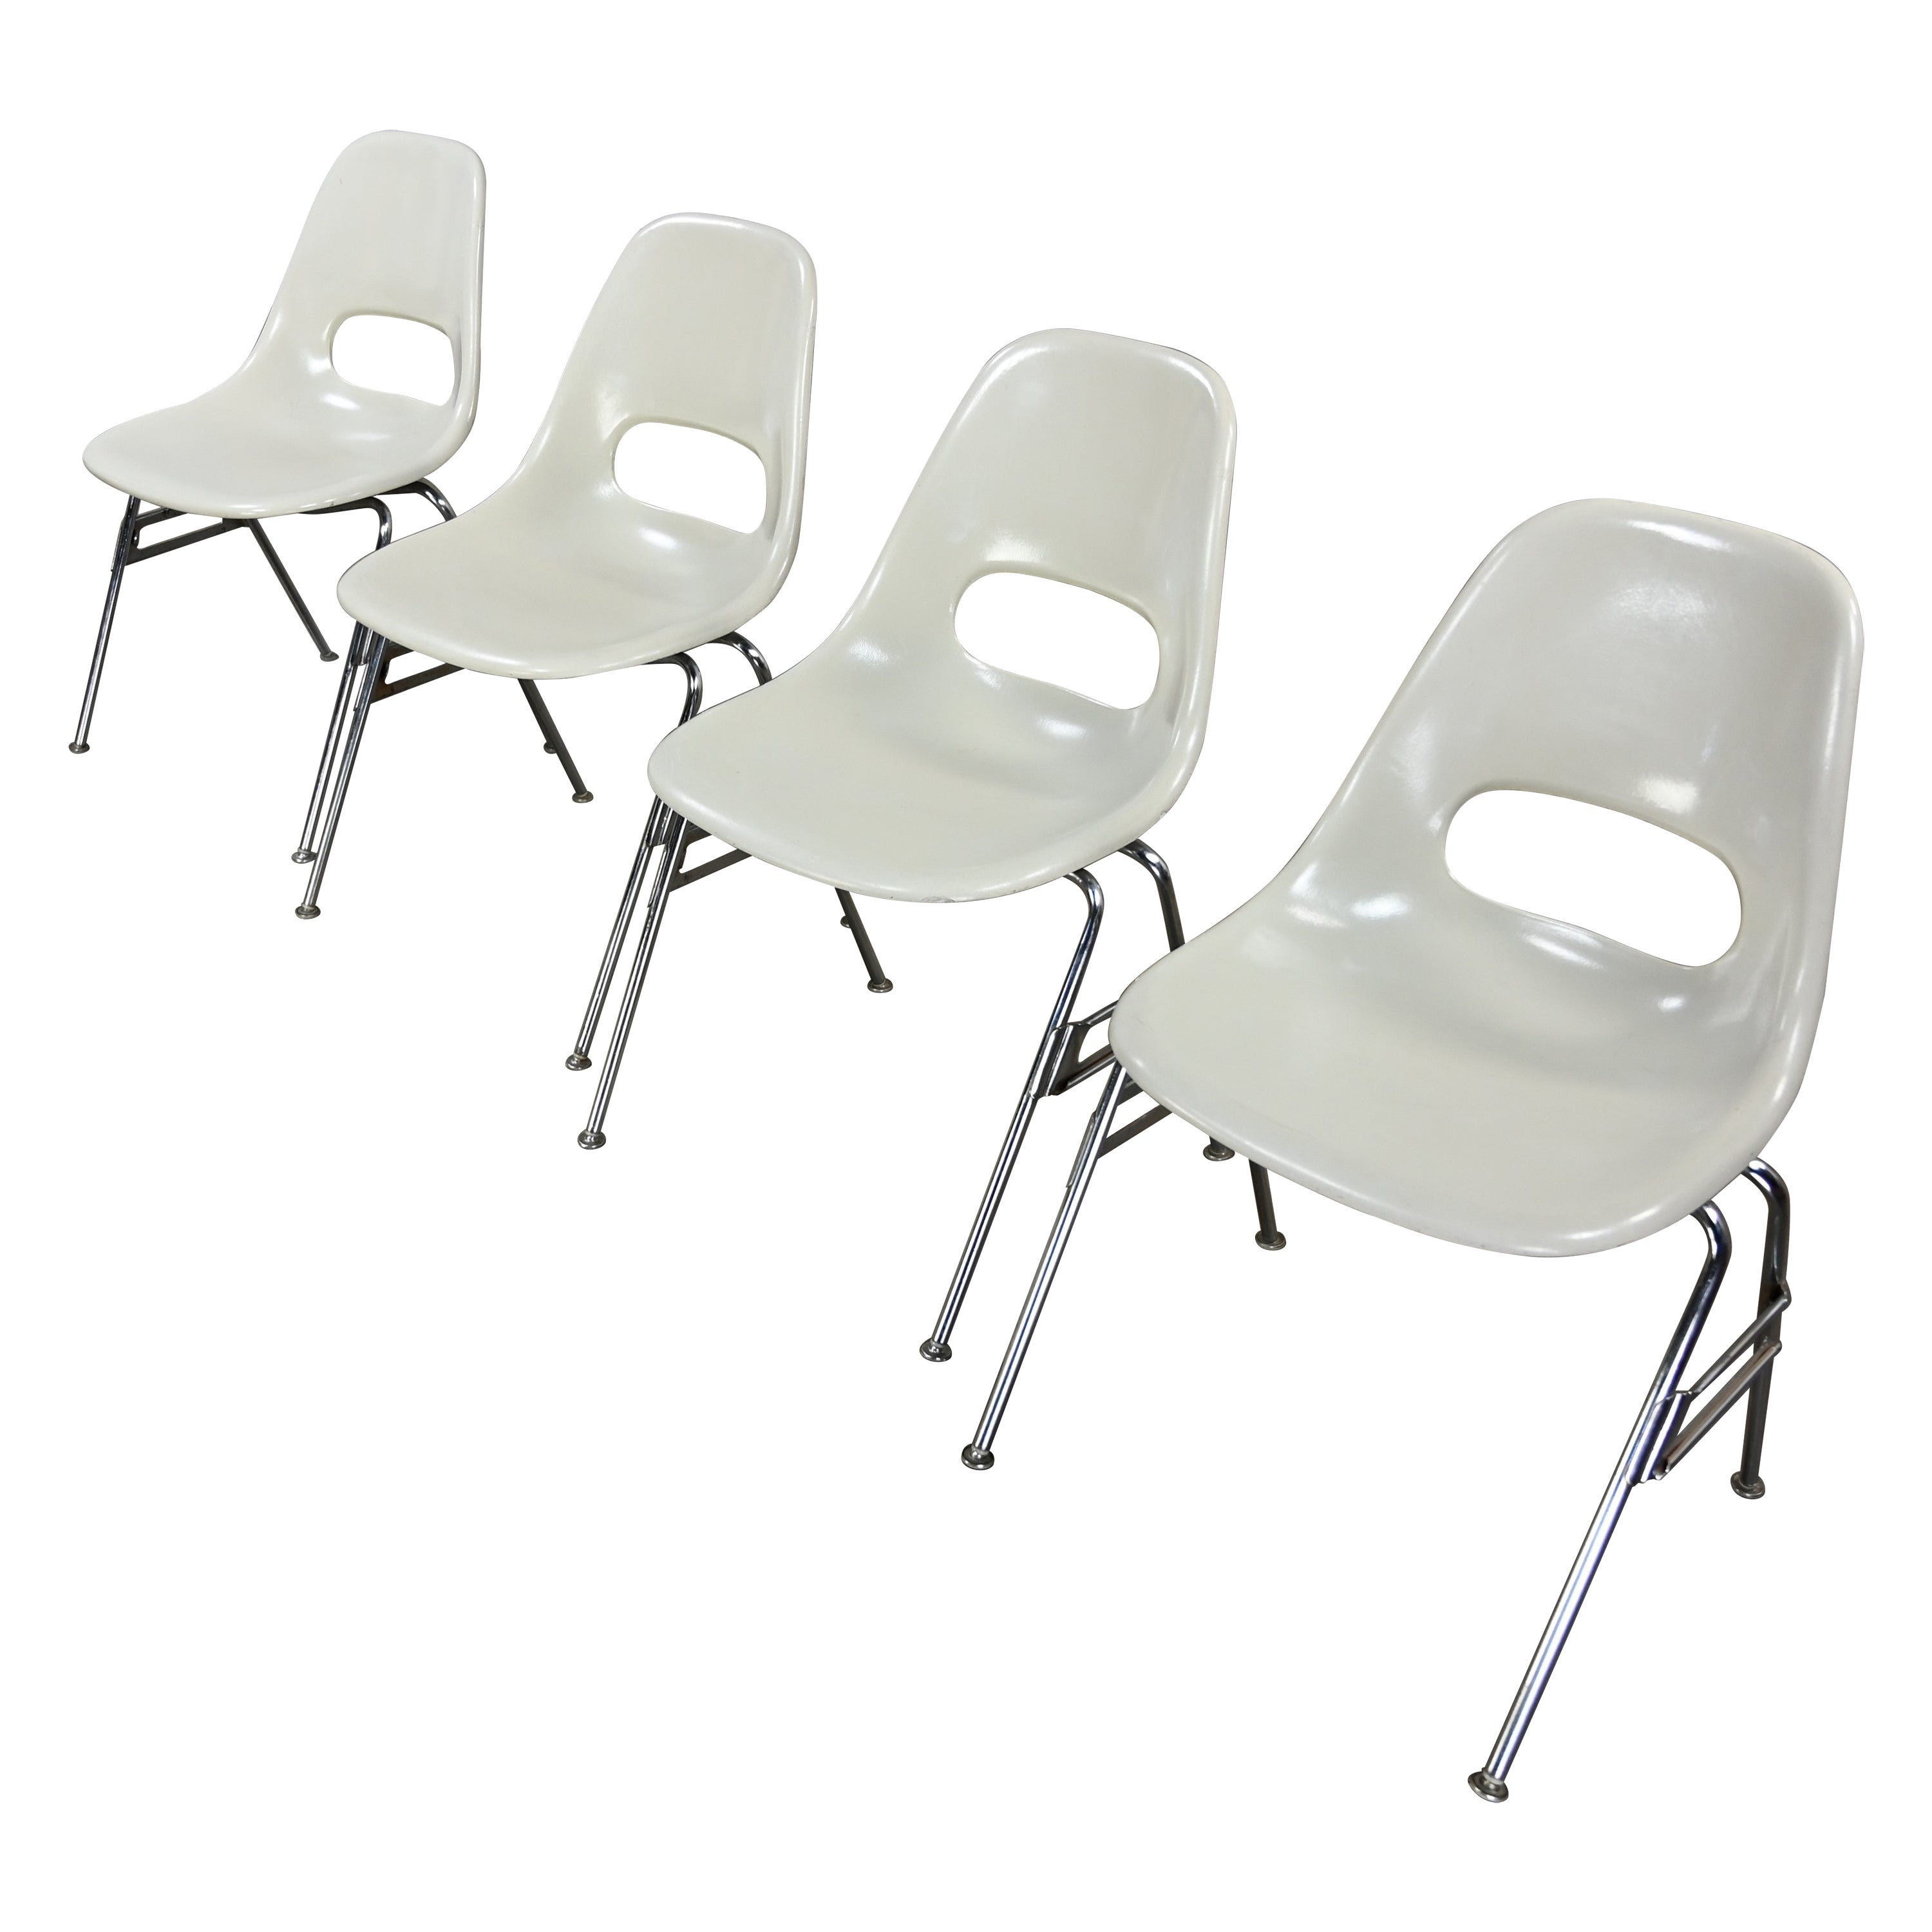 1960-70’s MCM Krueger International White Fiberglass & Chrome Stacking Chairs 4 For Sale